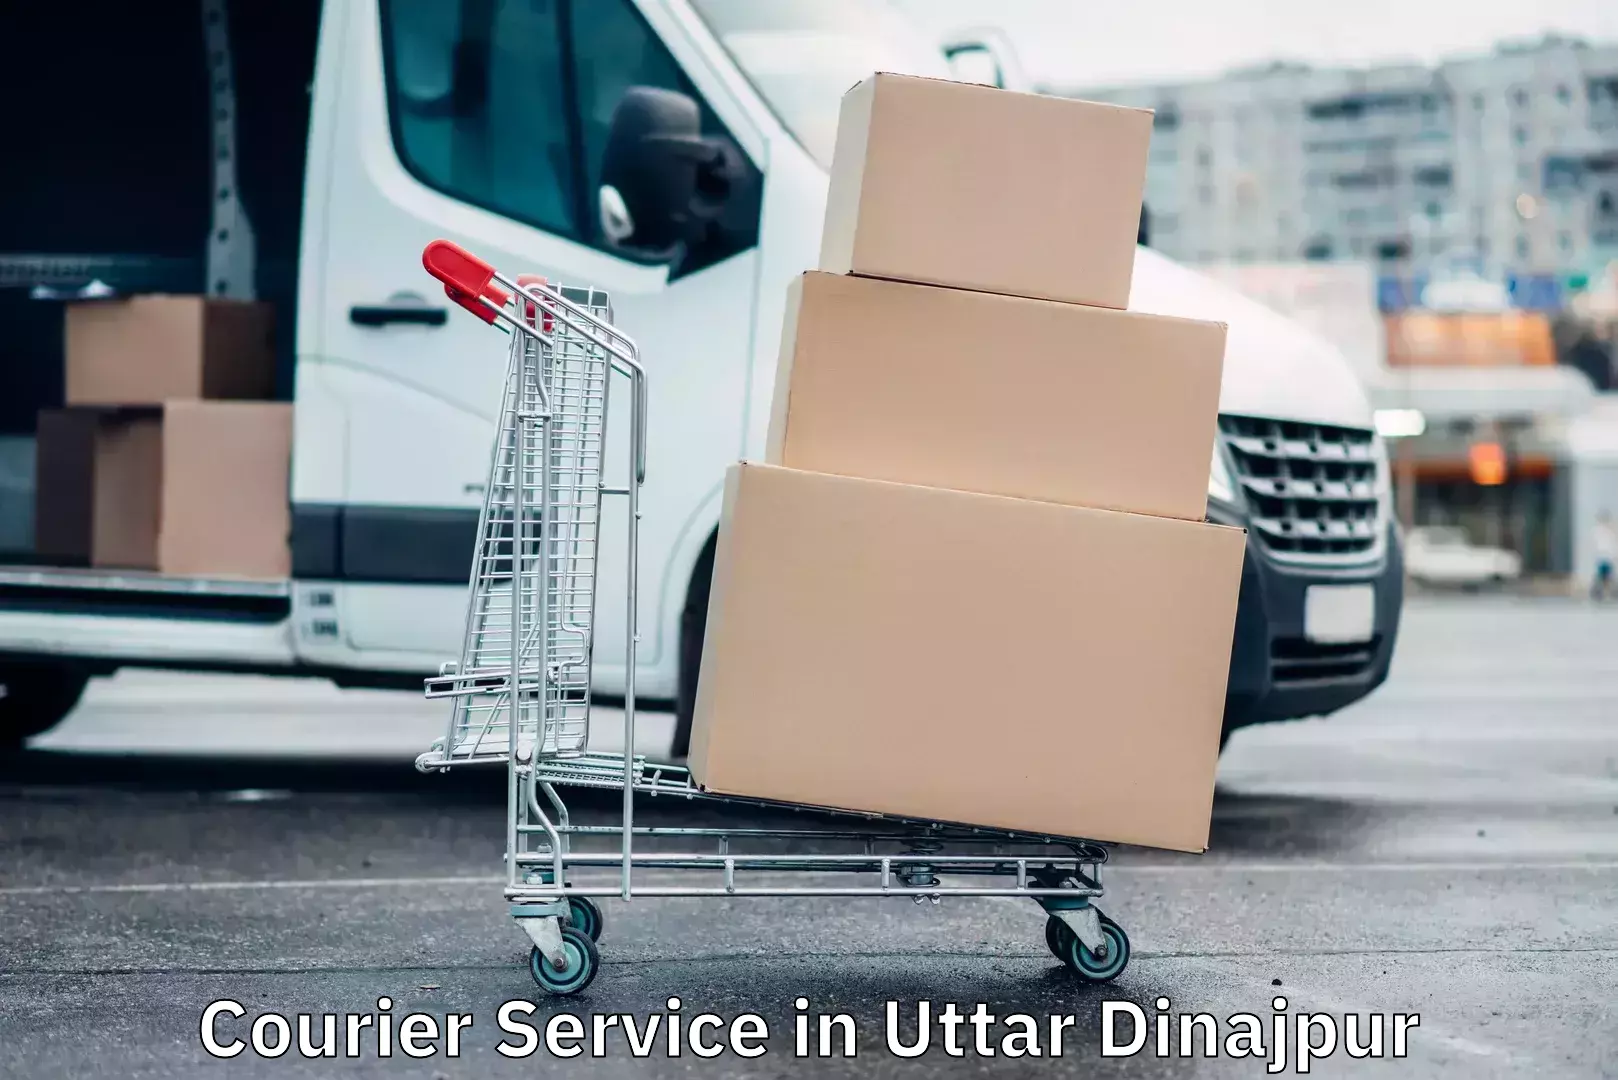 Efficient parcel transport in Uttar Dinajpur